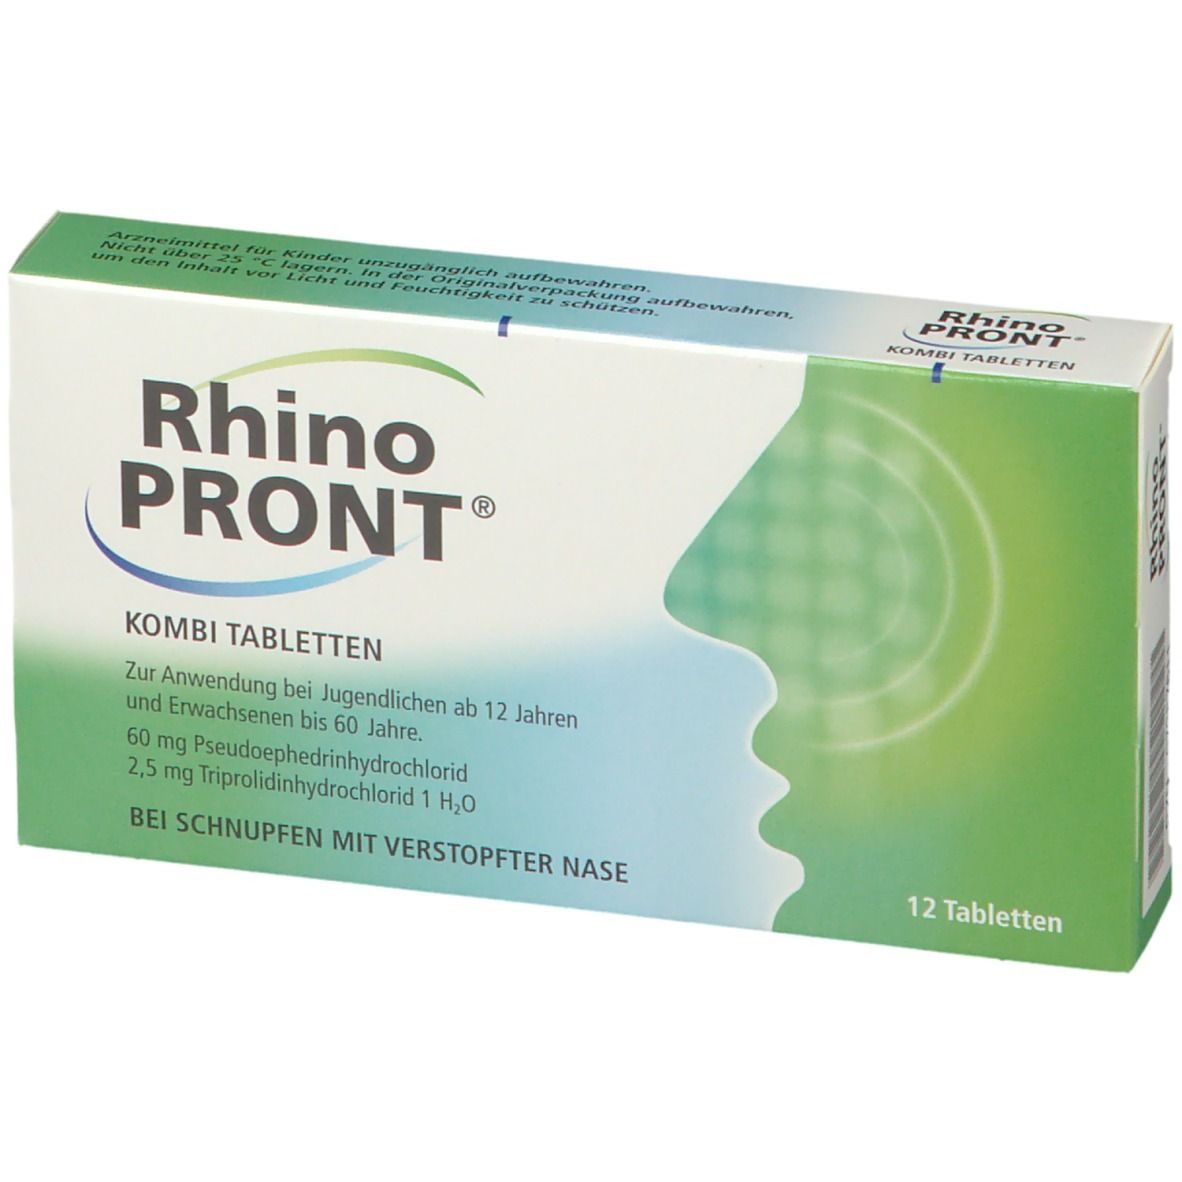 RhinoPRONT® KOMBI TABLETTEN